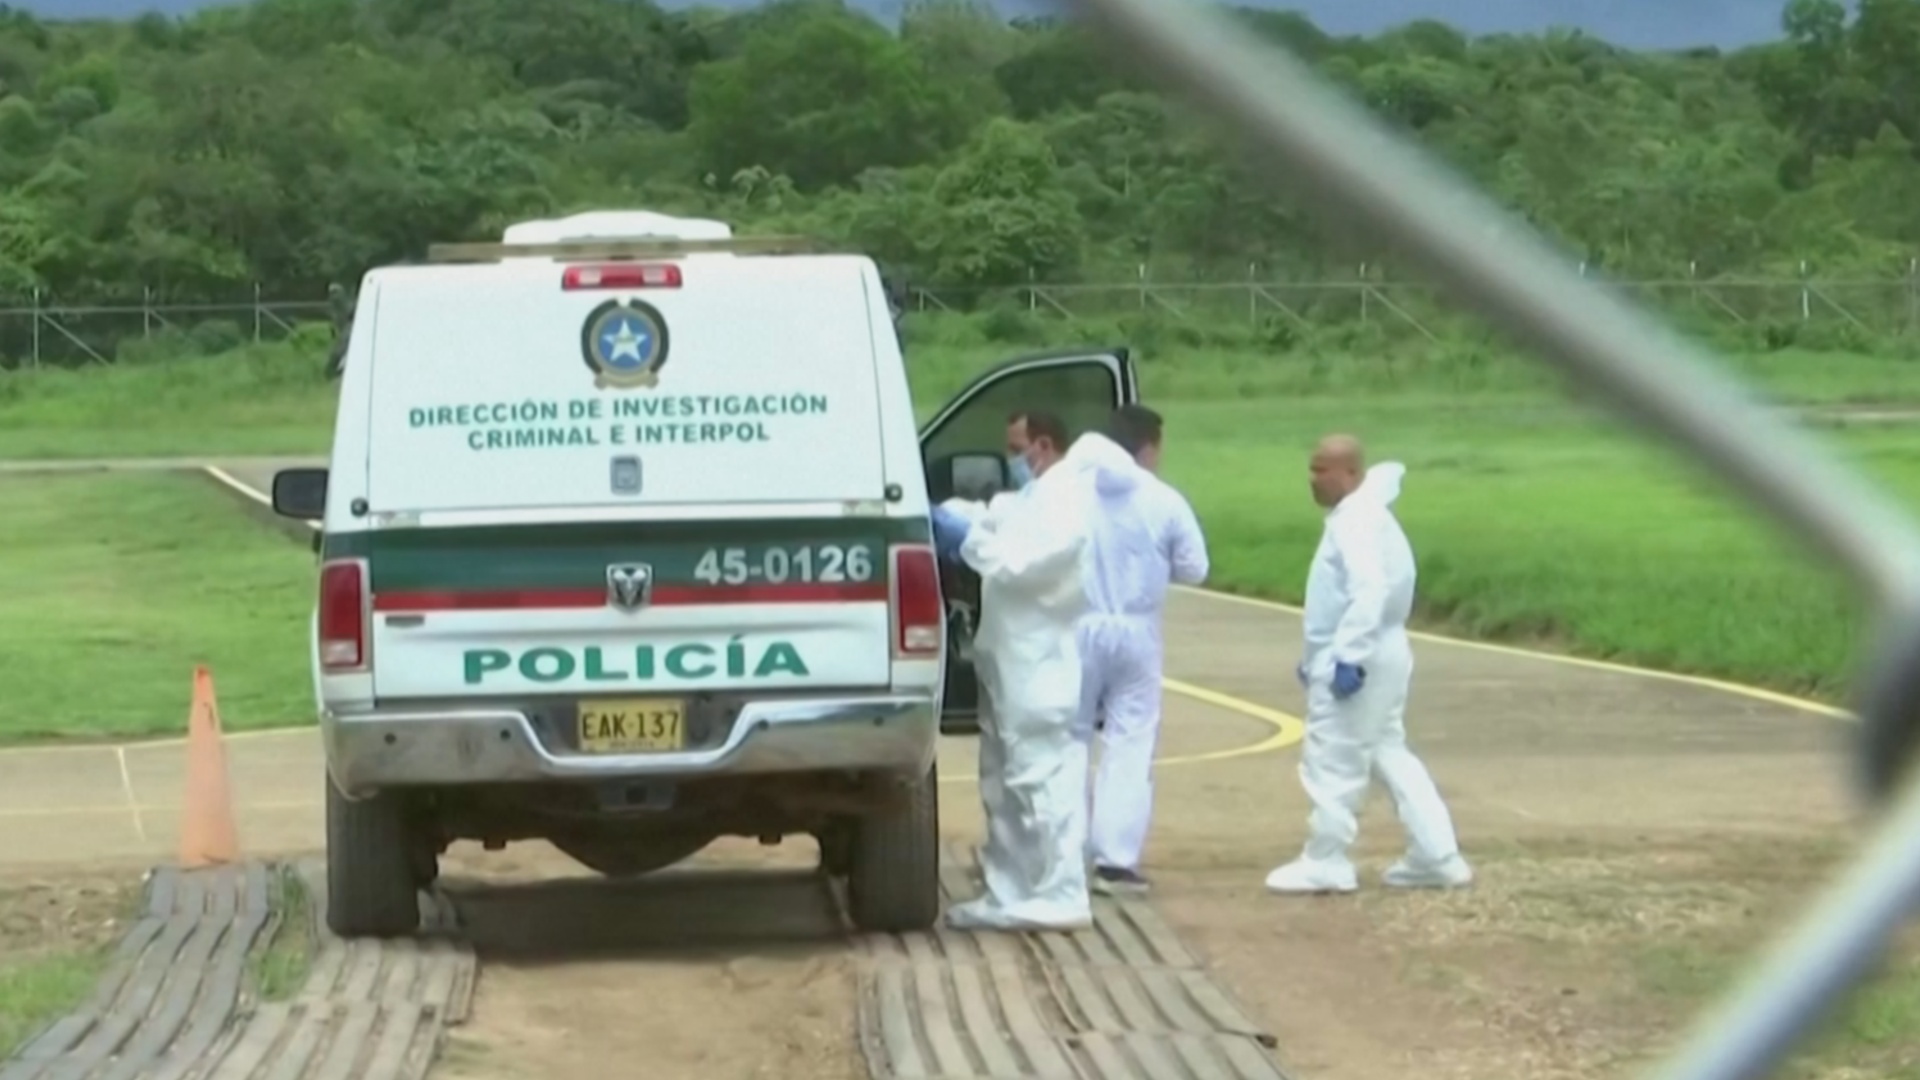 Авиакатастрофа в Колумбии: найдены тела трёх человек, четверых выживших детей ищут